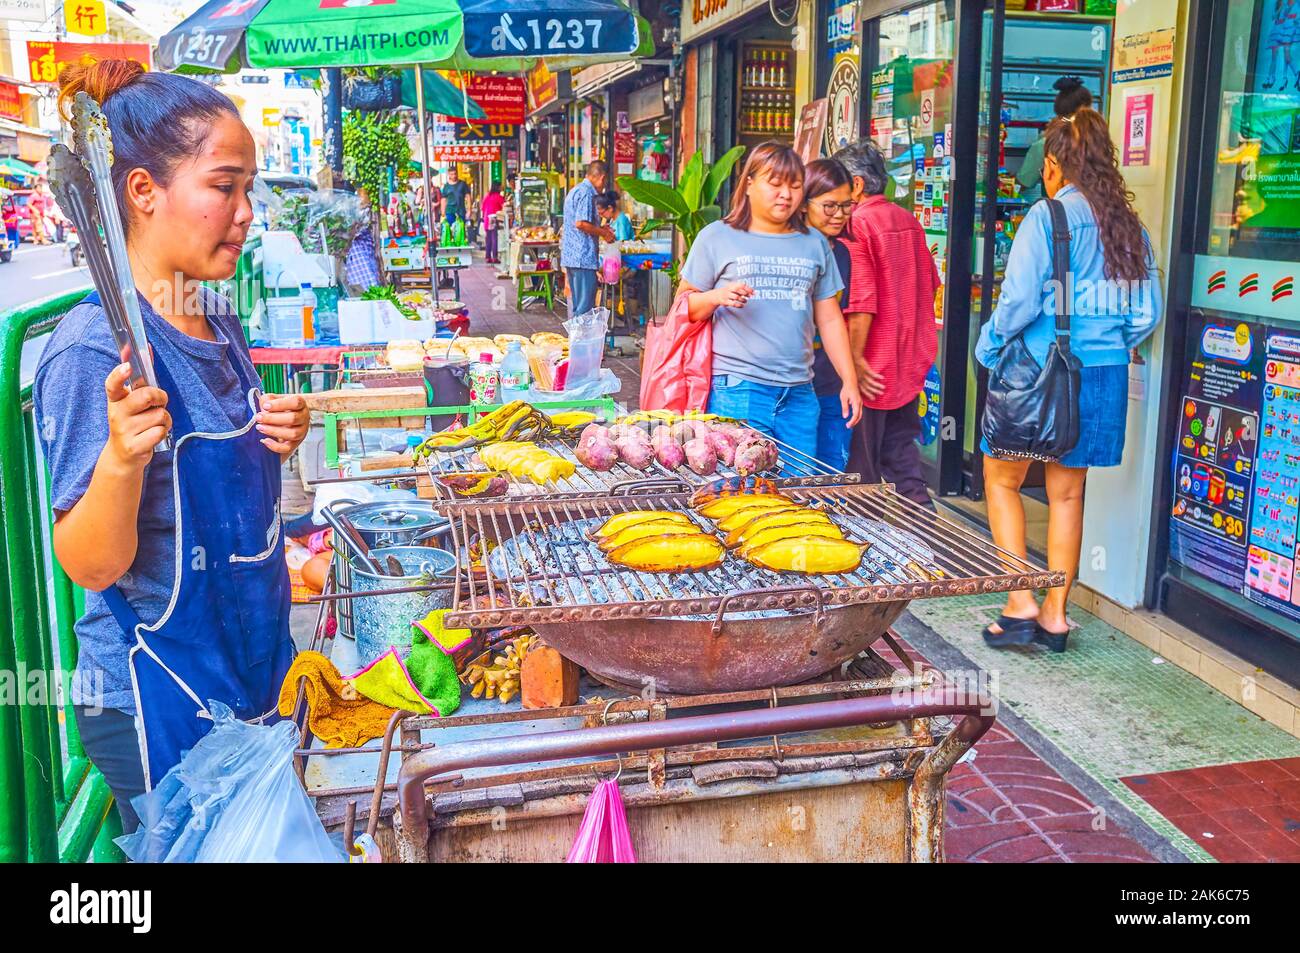 BANGKOK, THAILAND - 15 April, 2019: Das leckere frittierte Bananen sind eine der typischsten Straße Essen in Chinatown, am 15. April in Bangkok. Stockfoto